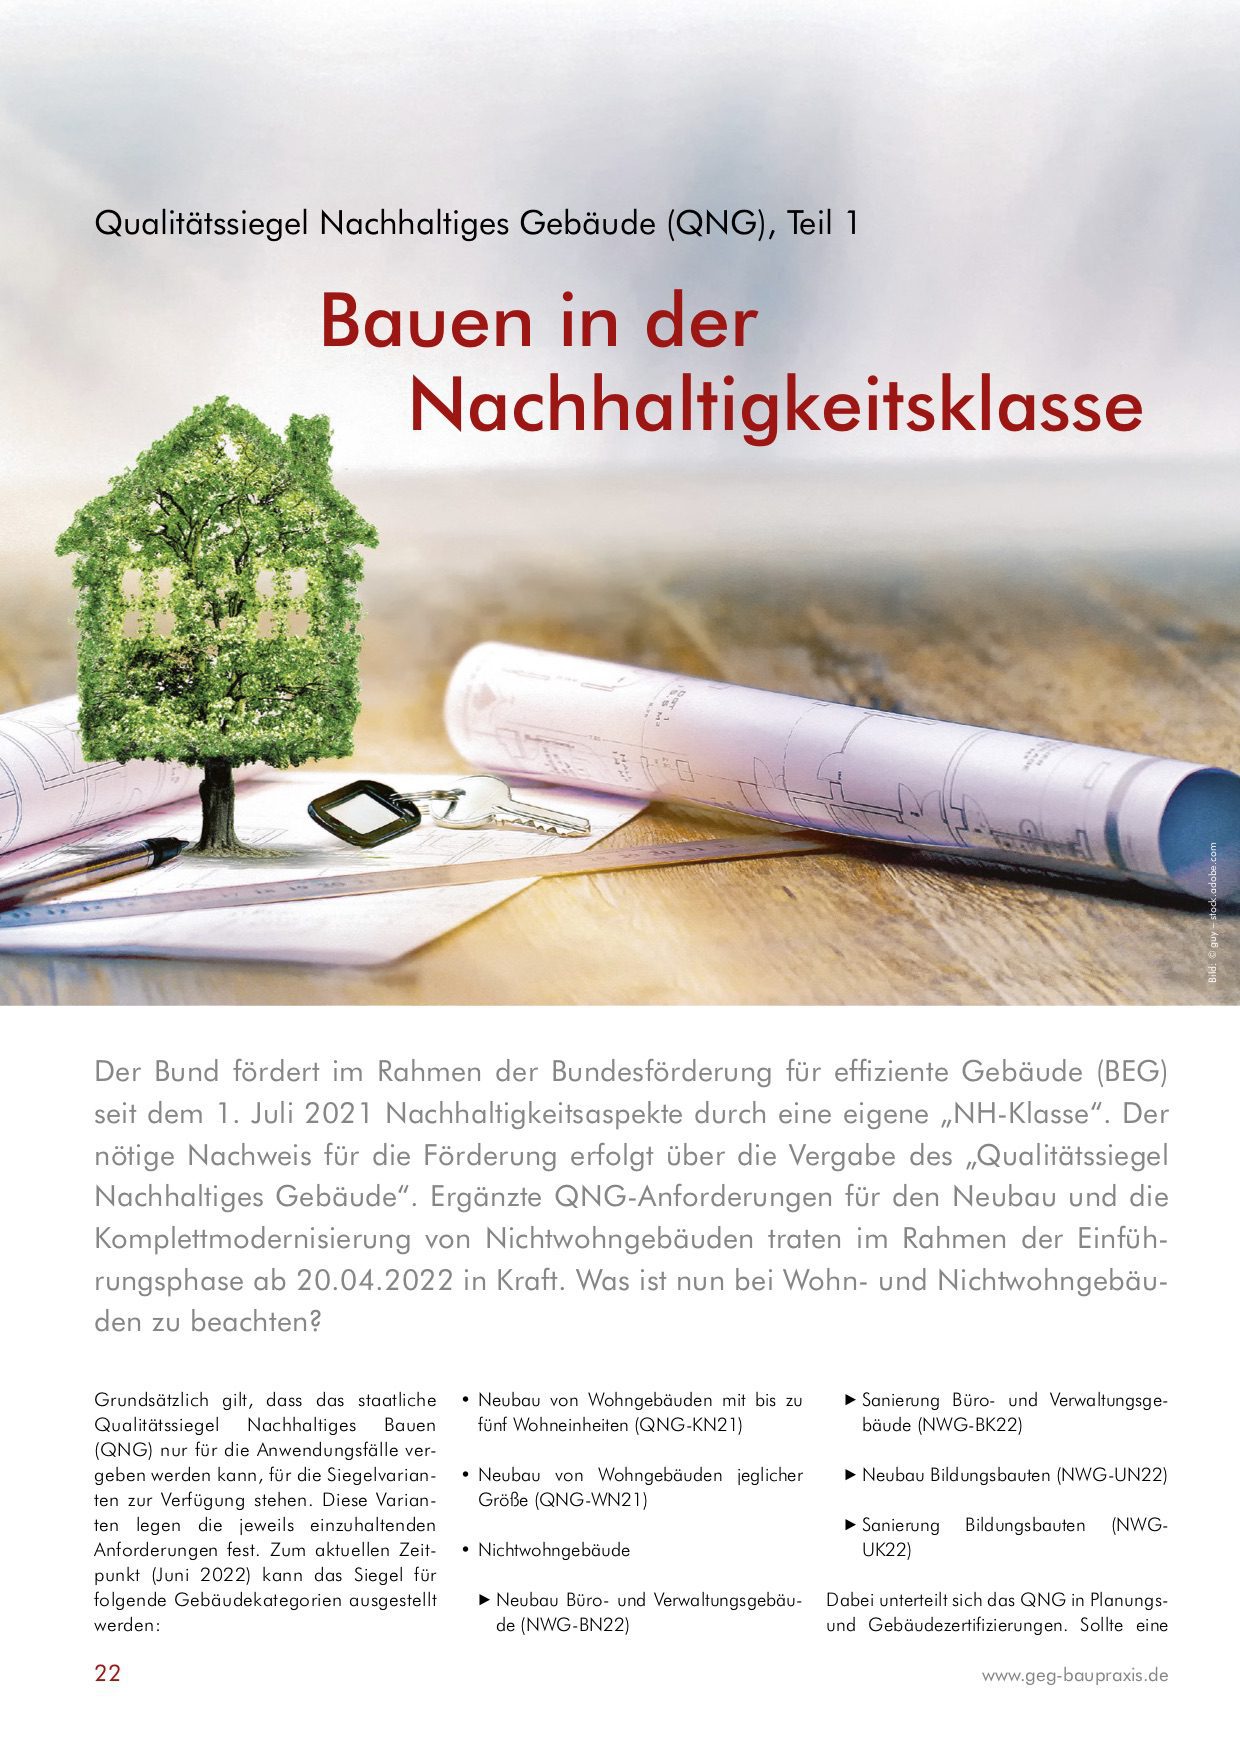 QNG: Bauen in der Nachhaltigkeitsklasse, Autor: M. Eng. Alexander Erdmann (GEG Baupraxis, 09/2022, Seite 22)